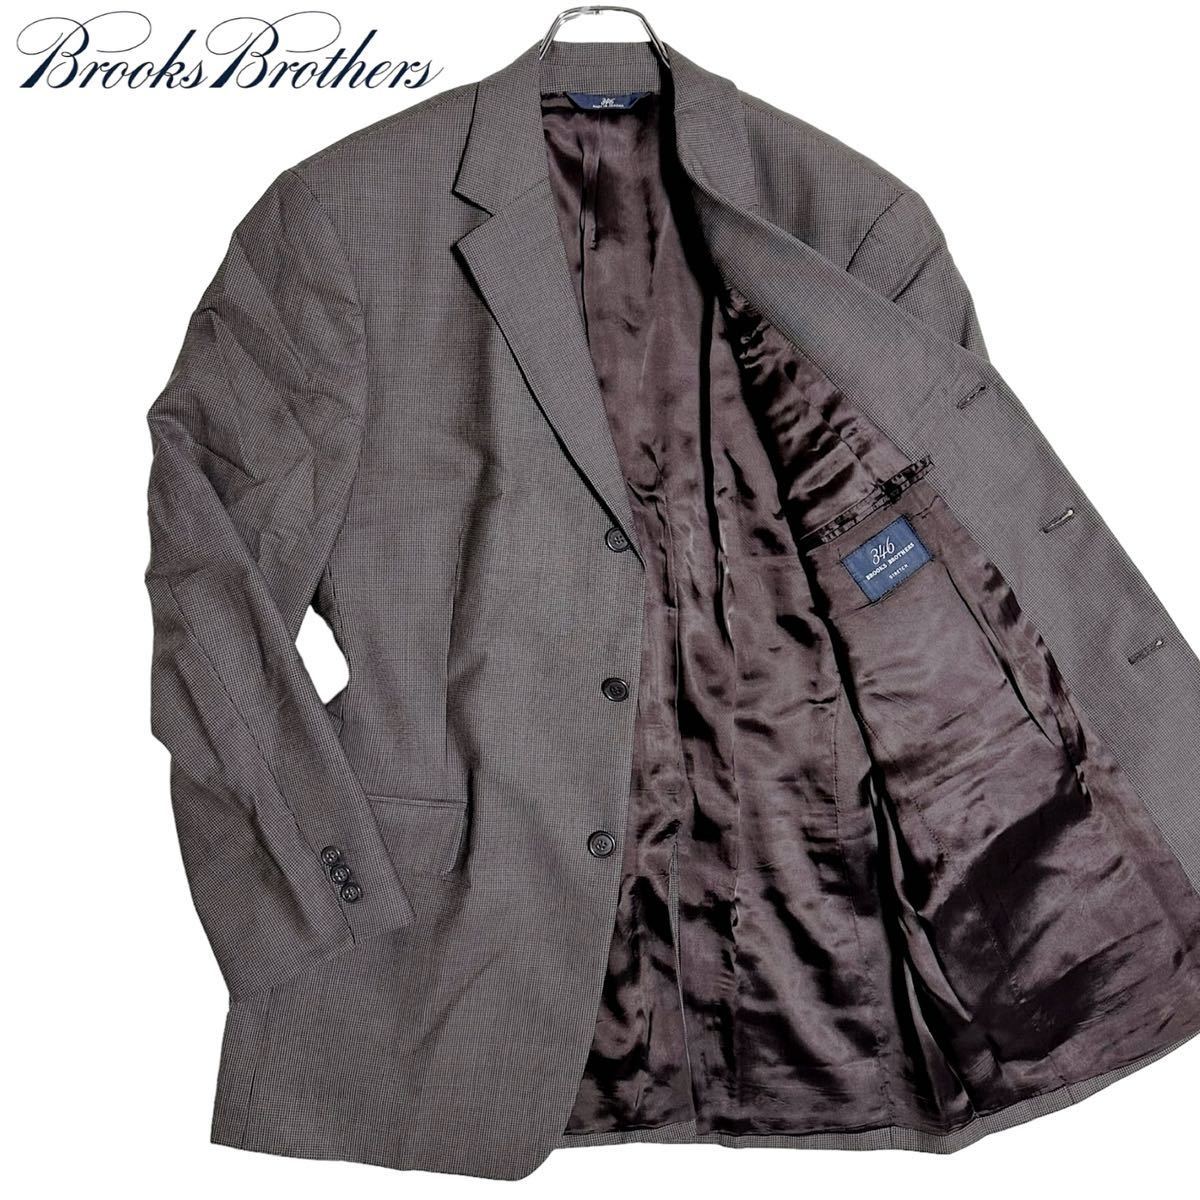 XLサイズ★ Brooks Brothers ブルックスブラザーズ テーラードジャケット 千鳥格子柄 総柄 2B ウール 大きいサイズ 41R ブラウン